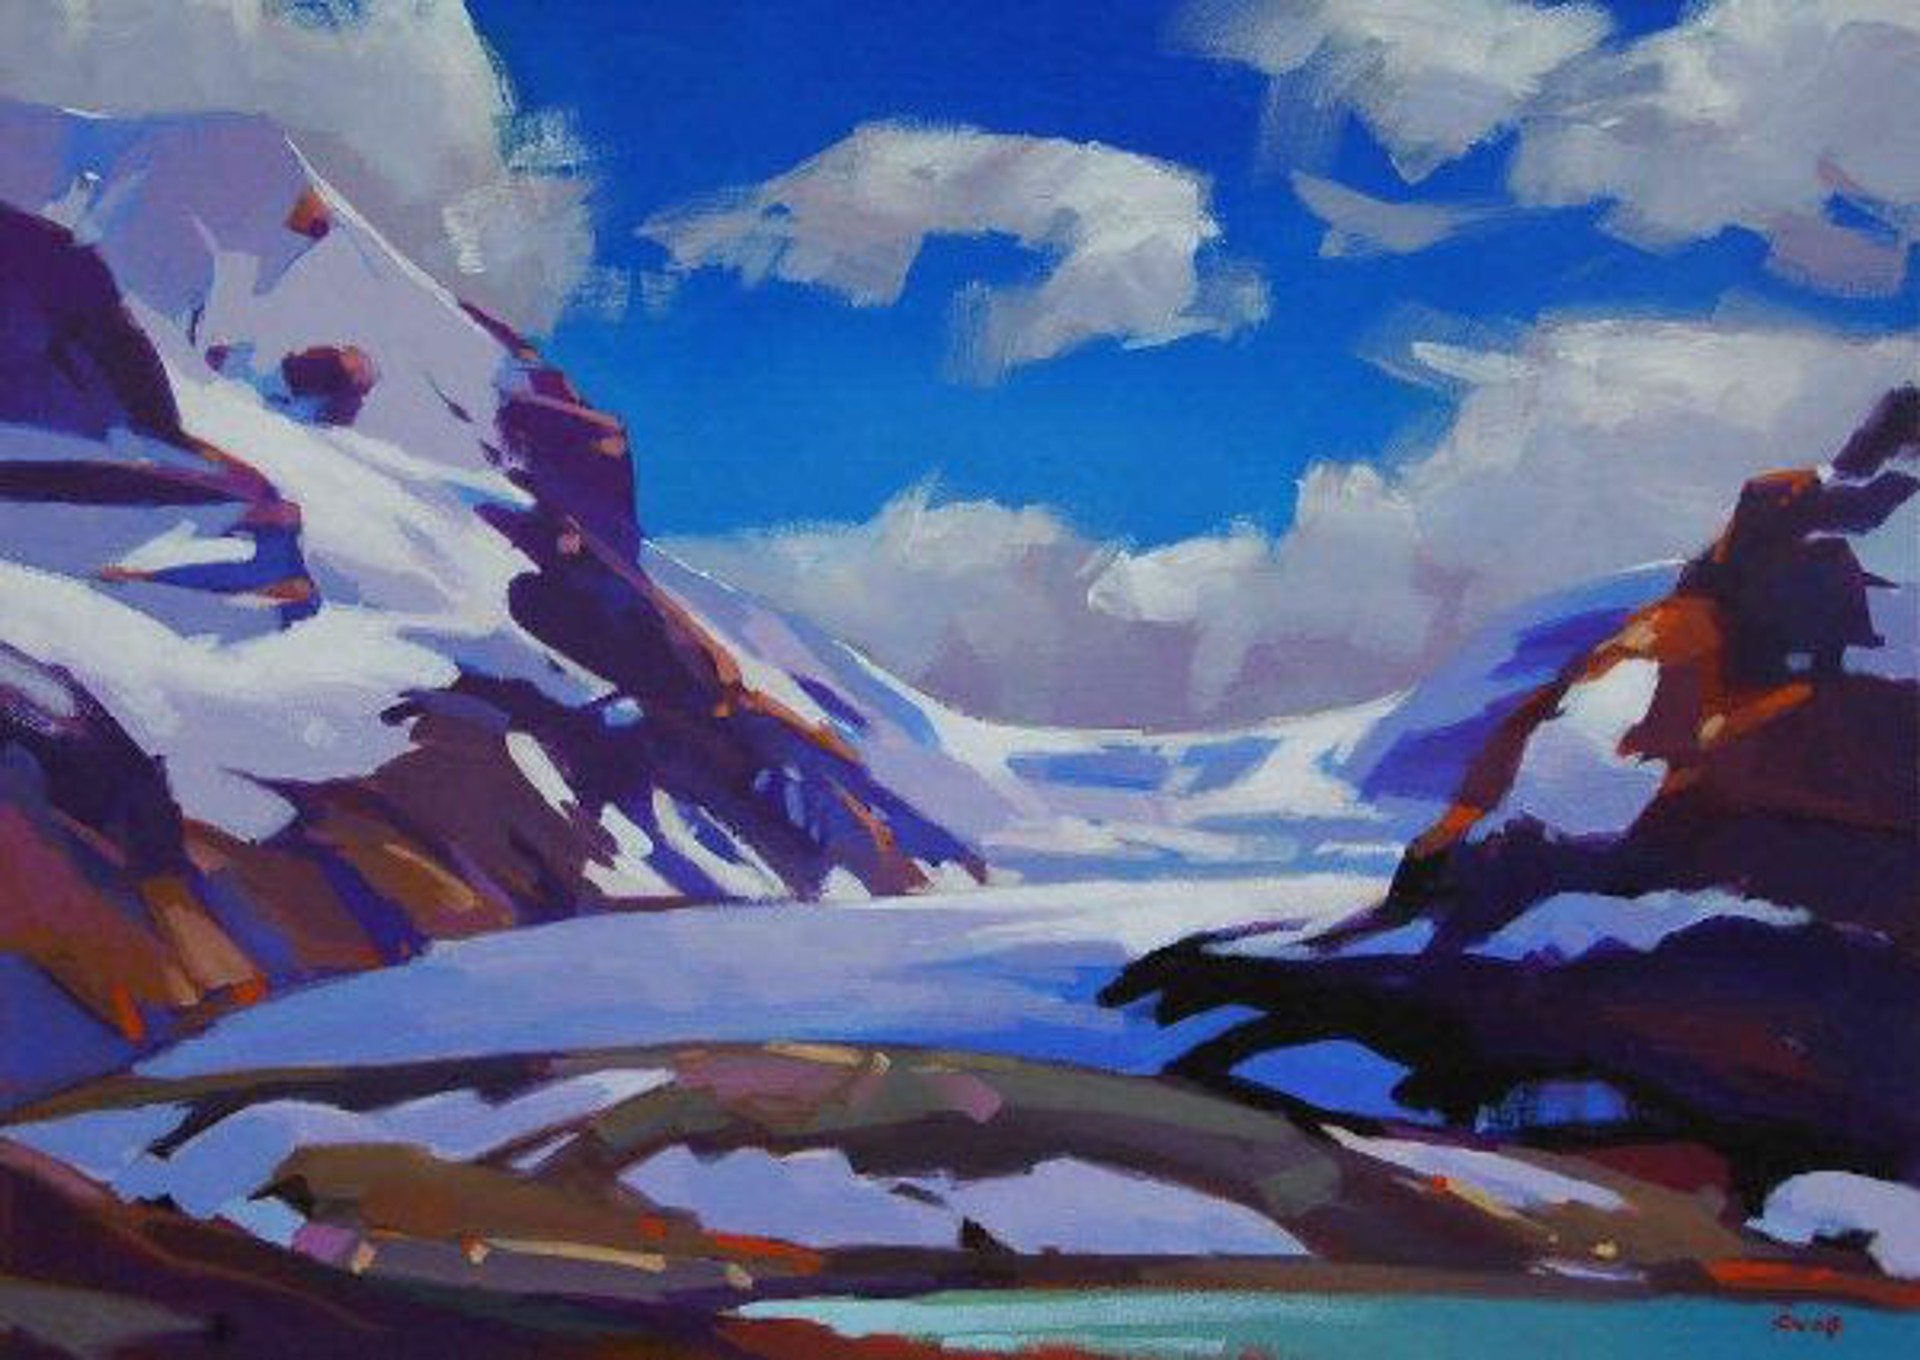 The Columbia Glacier by MIKE SVOB